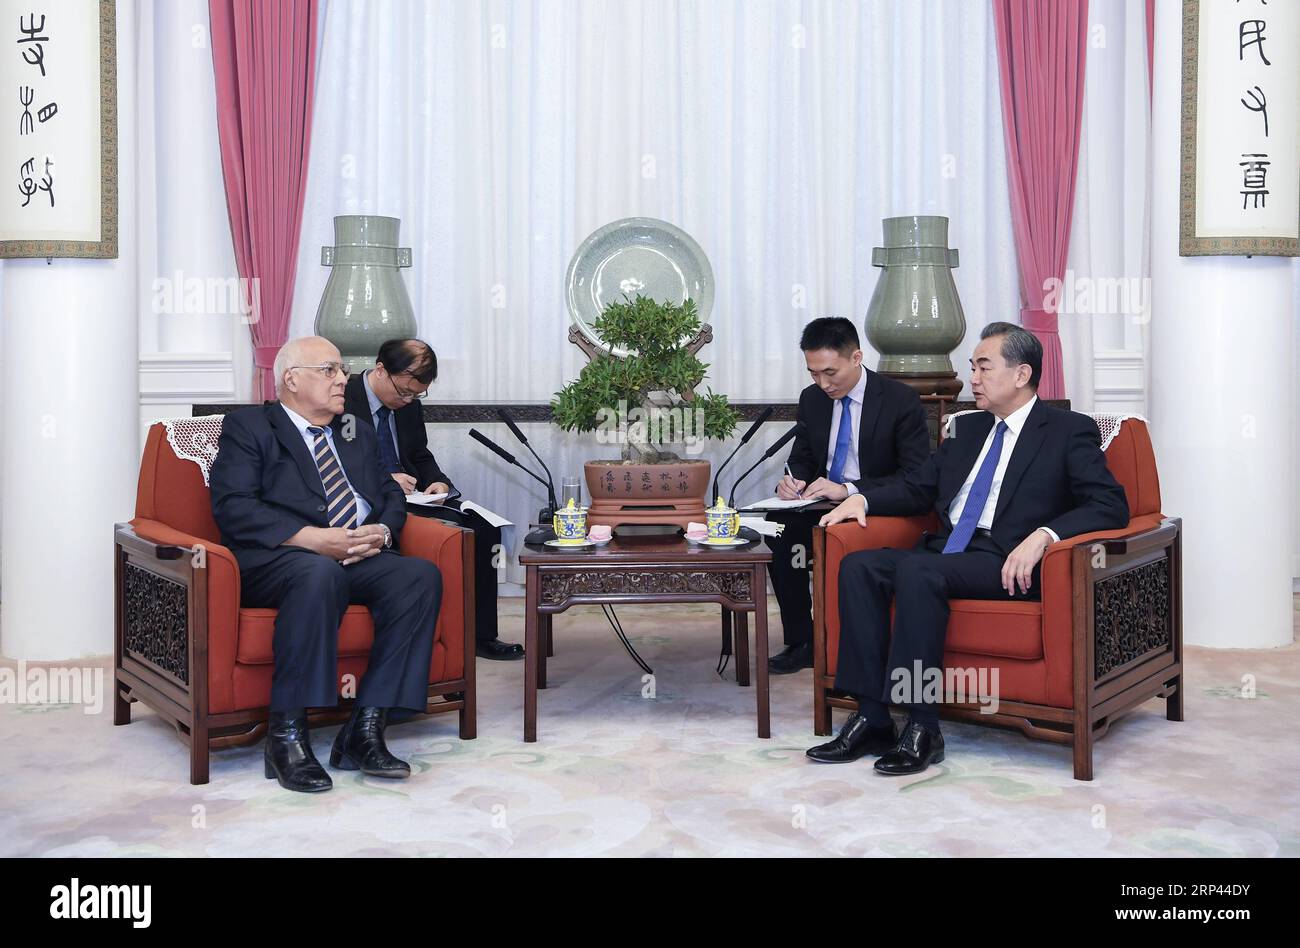 (181025) -- PÉKIN, le 25 octobre 2018 -- le conseiller d'État chinois et ministre des Affaires étrangères Wang Yi rencontre le vice-président du Conseil des ministres cubain Ricardo Cabrisas à Pékin, capitale de la Chine, le 25 octobre 2018. )(mcg) CHINA-CUBA-WANG YI-CABRISAS-MEETING (CN) ZhangxLing PUBLICATIONxNOTxINxCHN Banque D'Images